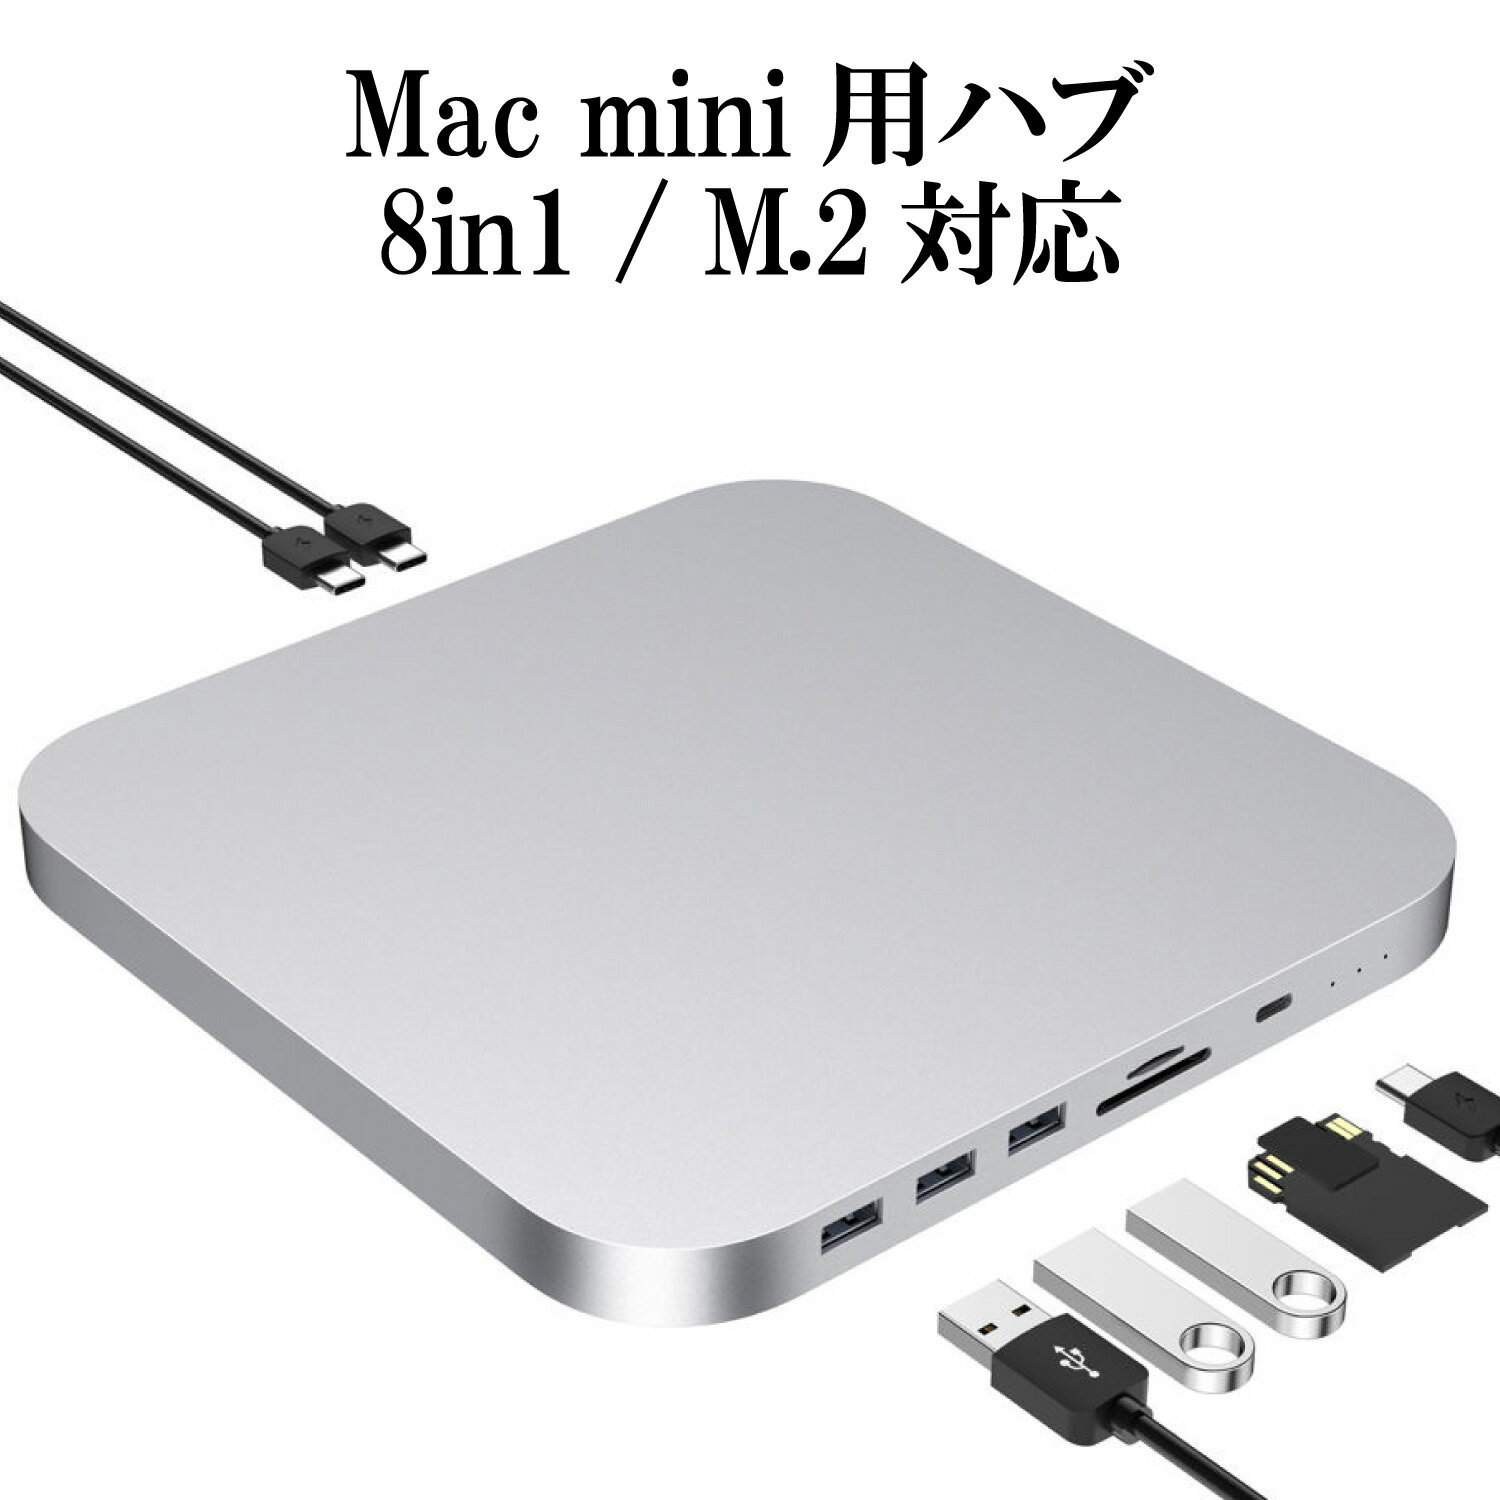 Mac mini ドッキングステーション ( 8in1 TypeC ハブ ) シルバー / M.2 2.5インチ SATA接続 SSD / HHD スロット (外付け SSD ケース ) / TypeA USB3.0 TypeC USB3.1 SD/TF microSD カードリーダー